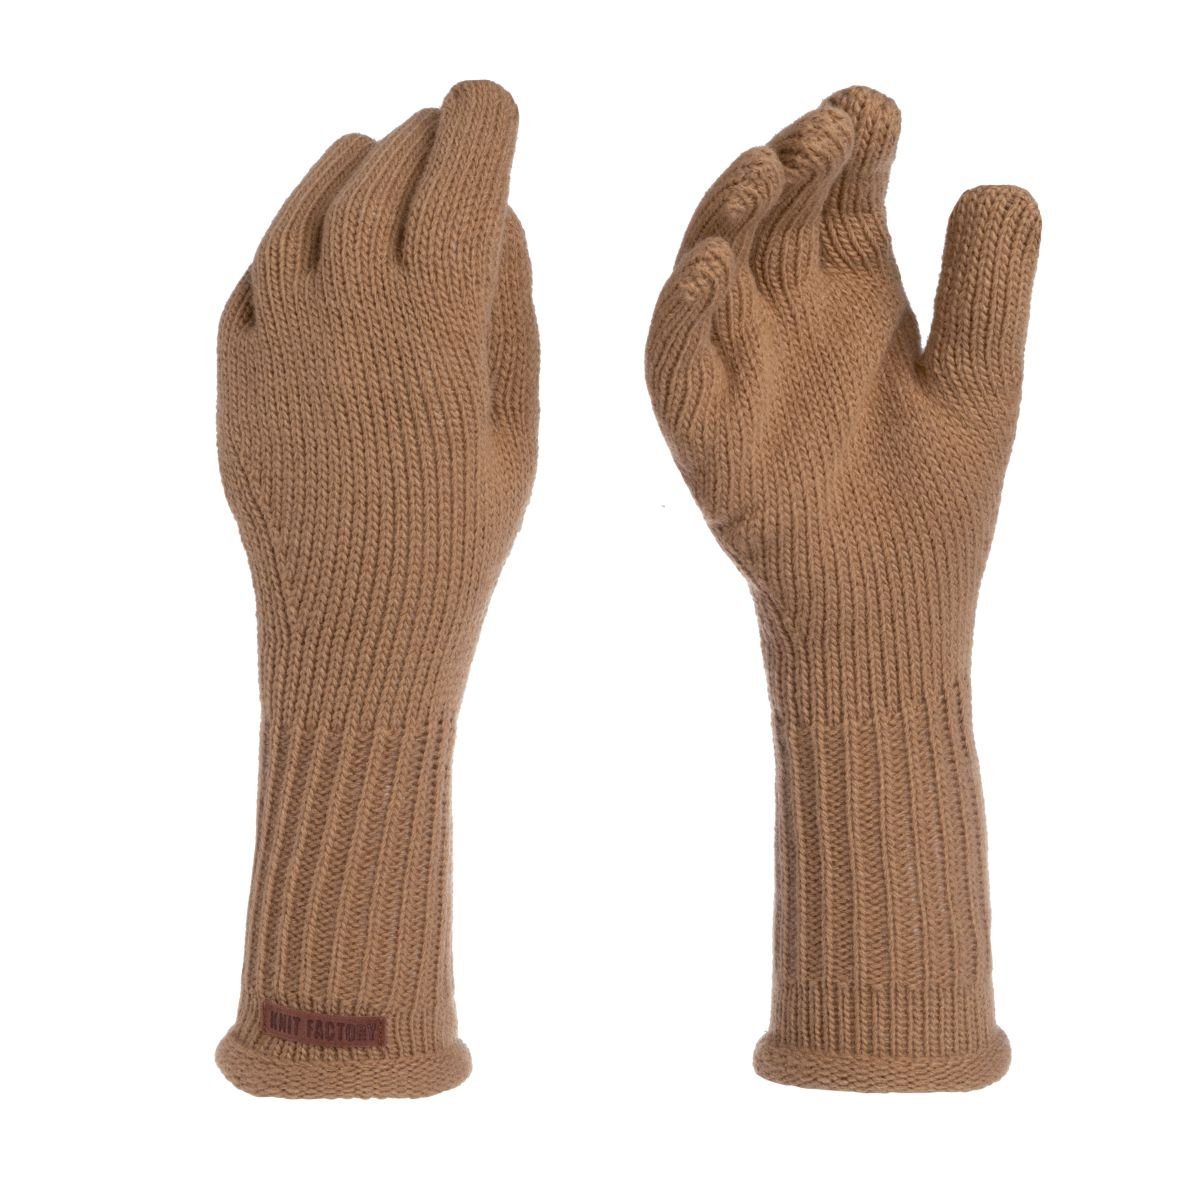 Glatt Handschuhe Factory Beige Finger Handstulpen Handschuhe Knit Strickhandschuhe Lana One ihne Size Handschuhe